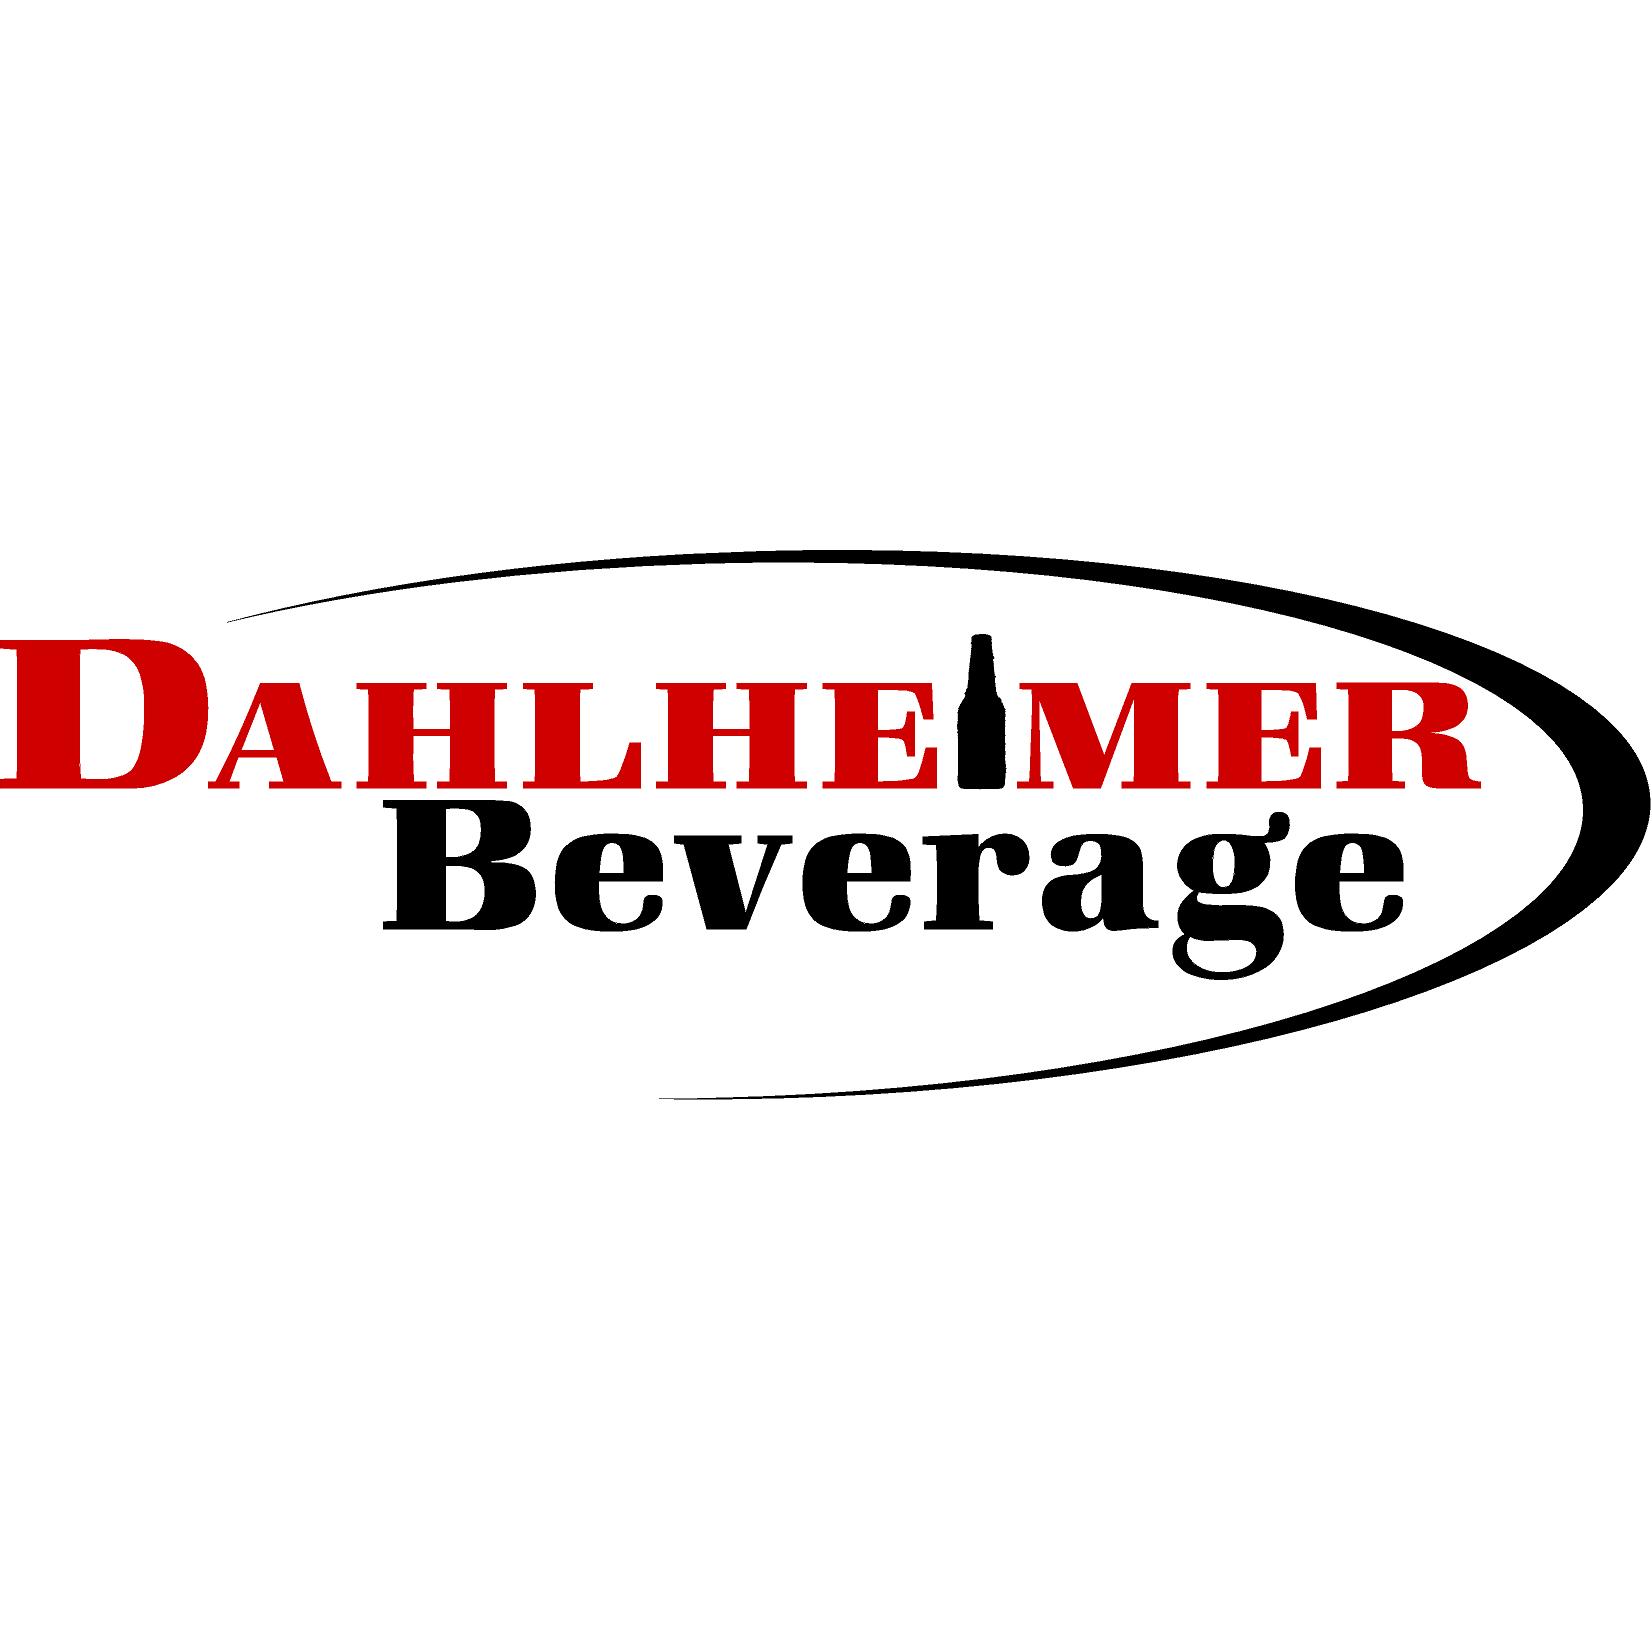 Dahlheimer Beverage